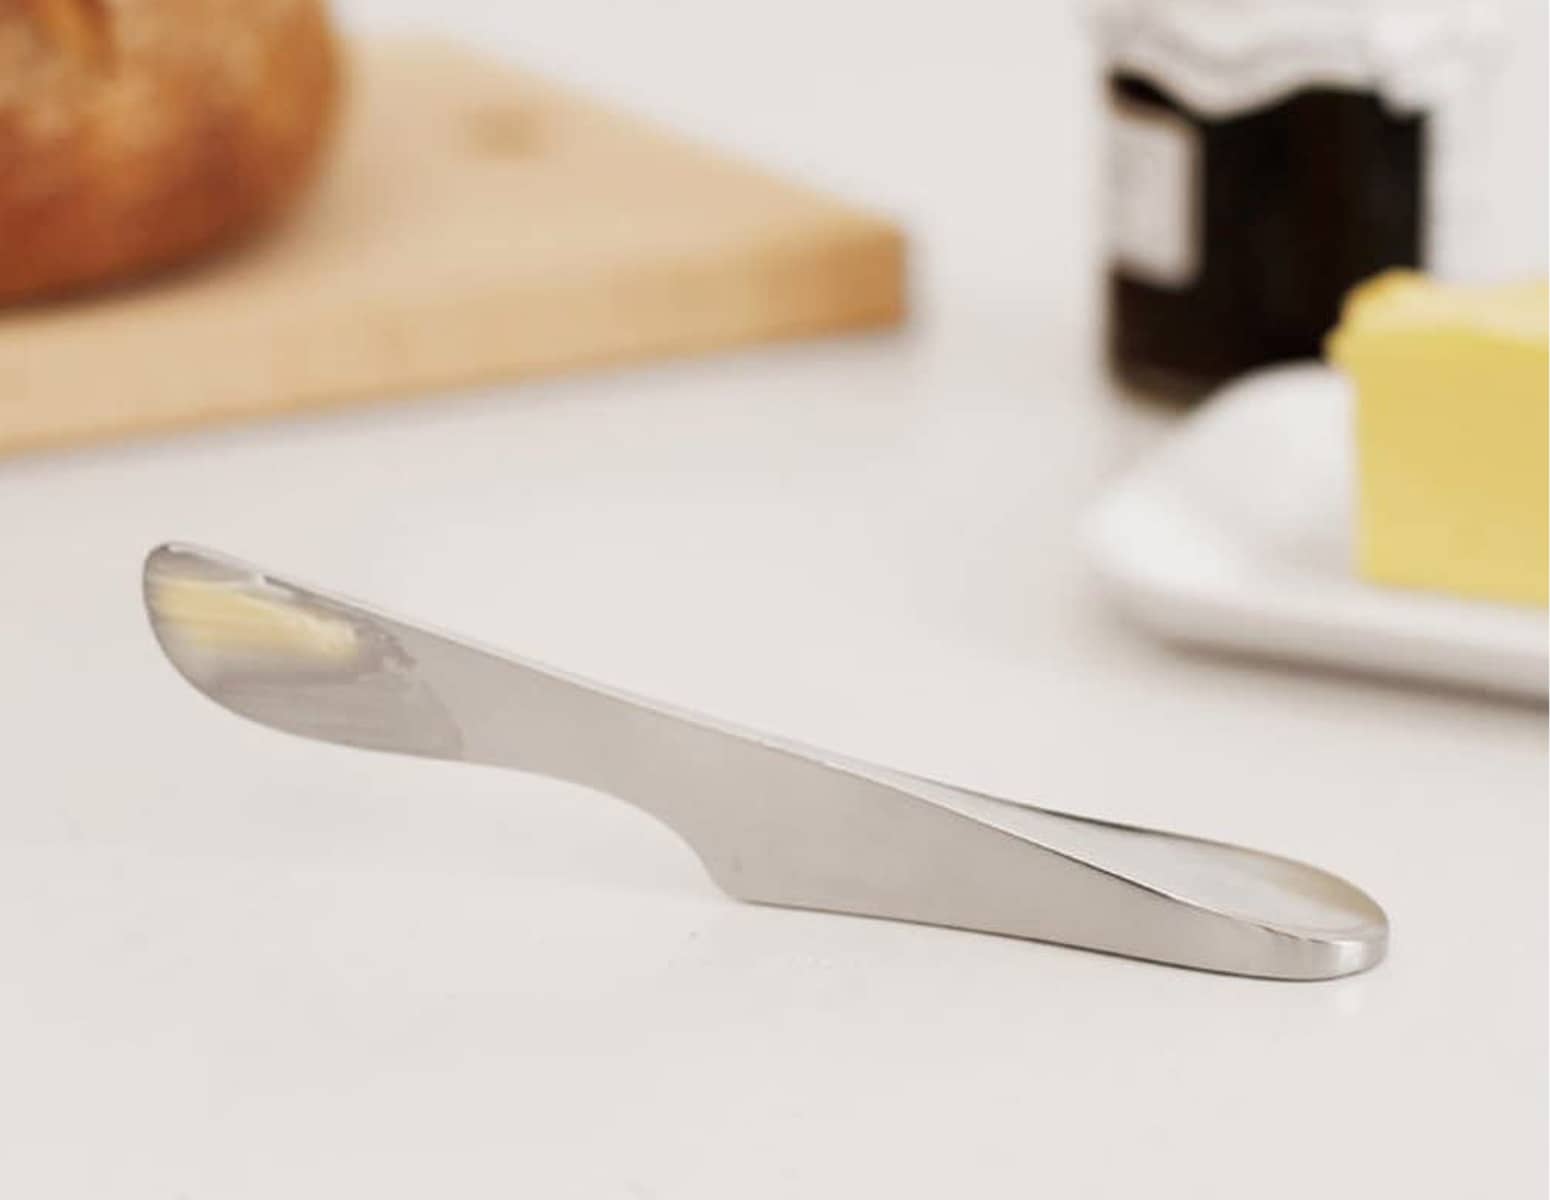 Elevated Butter Spreader Knife